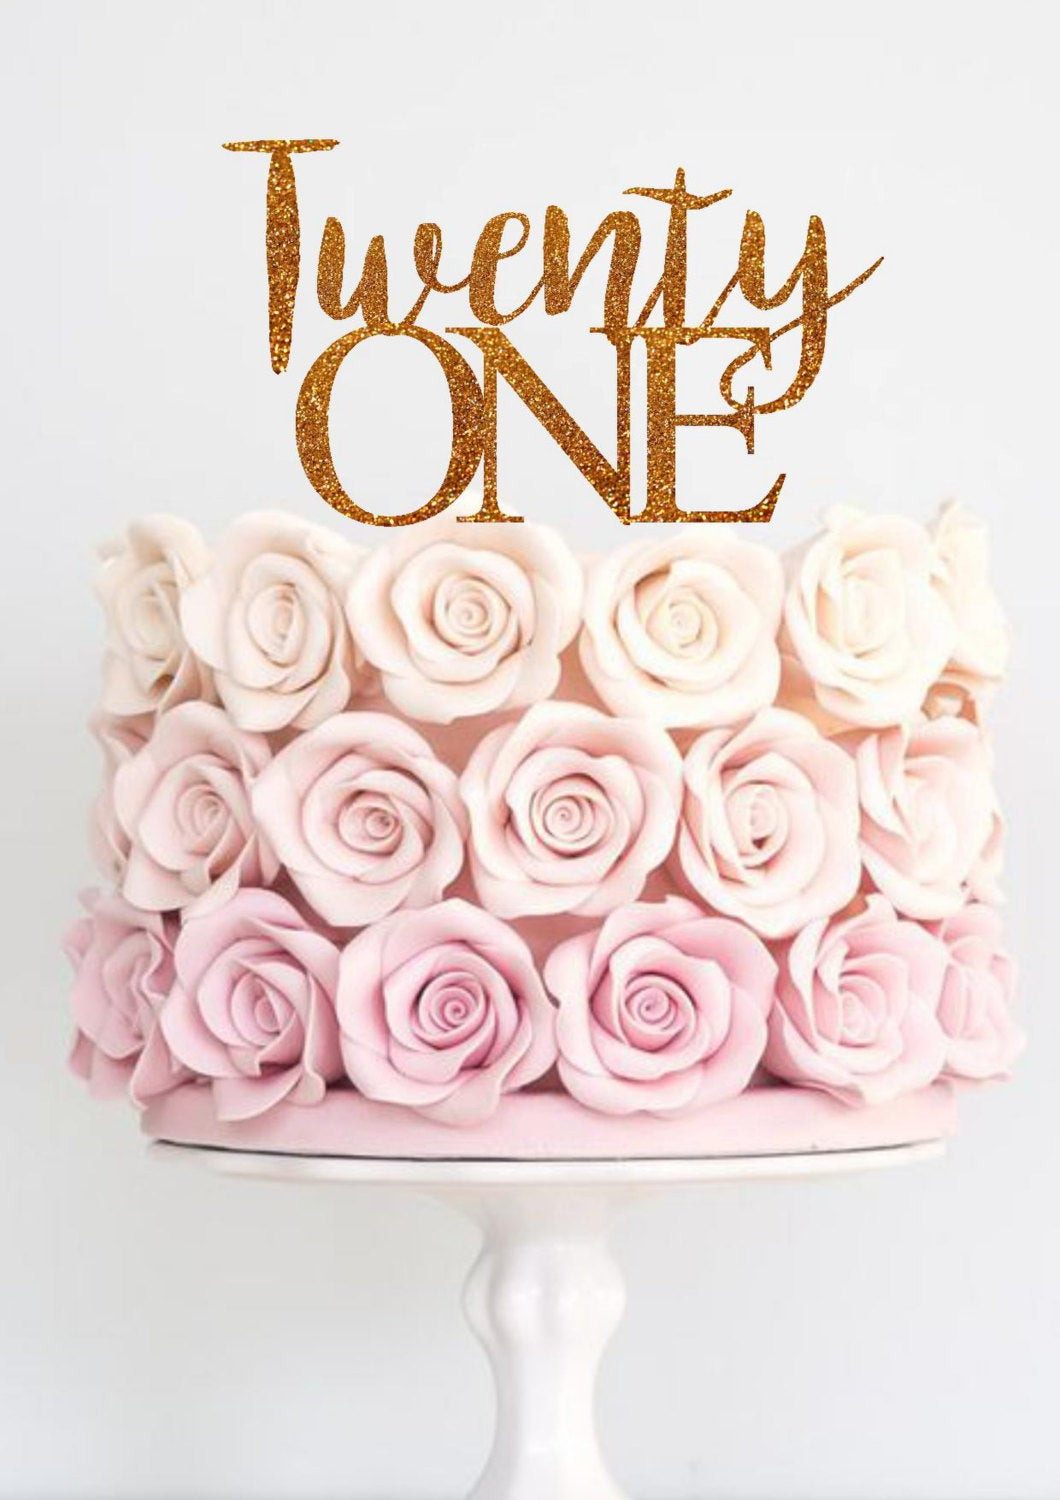 21St Birthday Cake Toppers
 Twenty e Cake Topper Birthday Cake Topper 21st Birthday